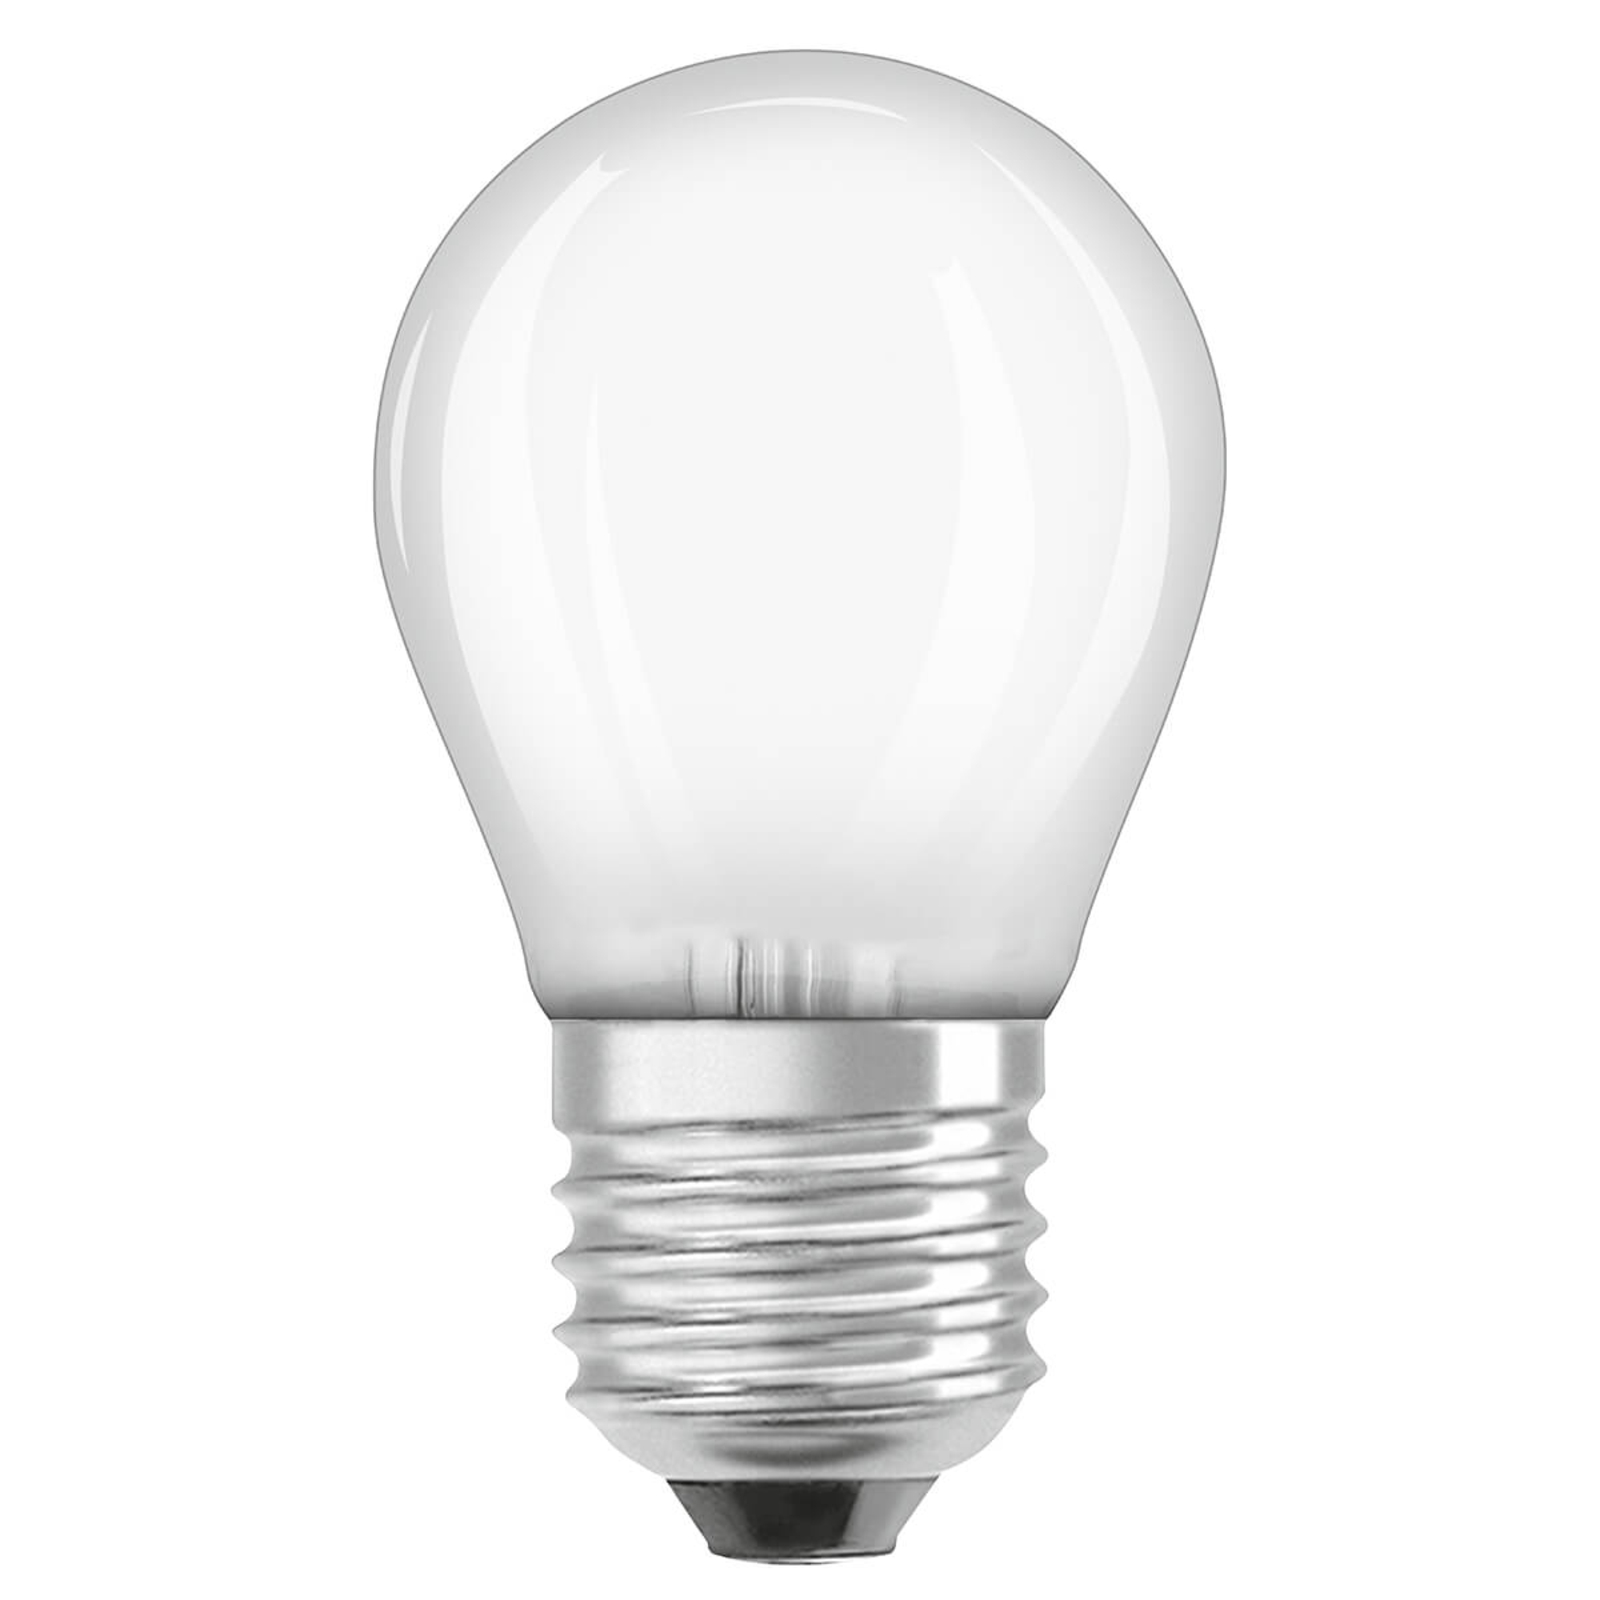 OSRAM LED druppellamp E27 4,8W 827 dimbaar